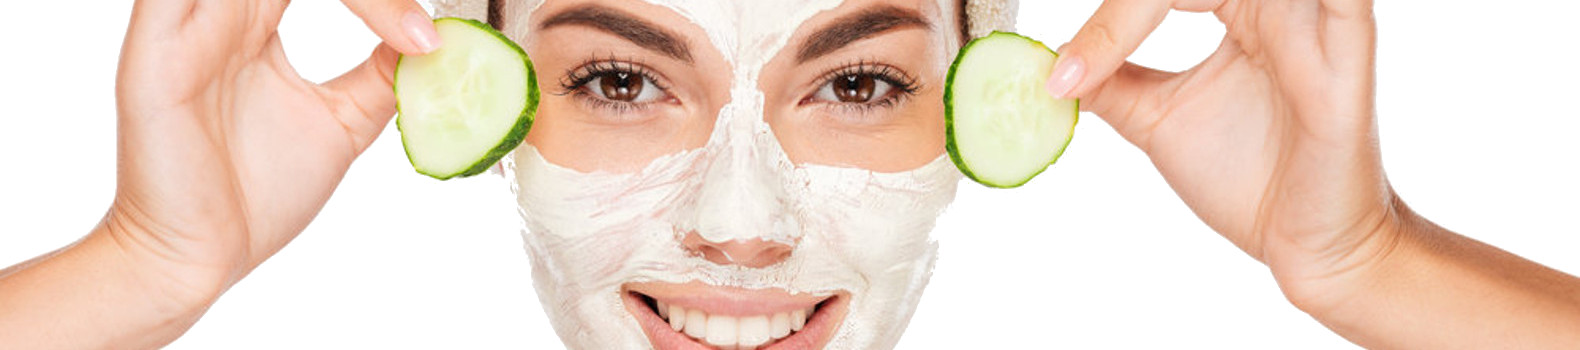 Маски от морщин после 45. Догляд за жирною шкірою: маски для. Догляд за жирною шкірою: маски для звуження пір.